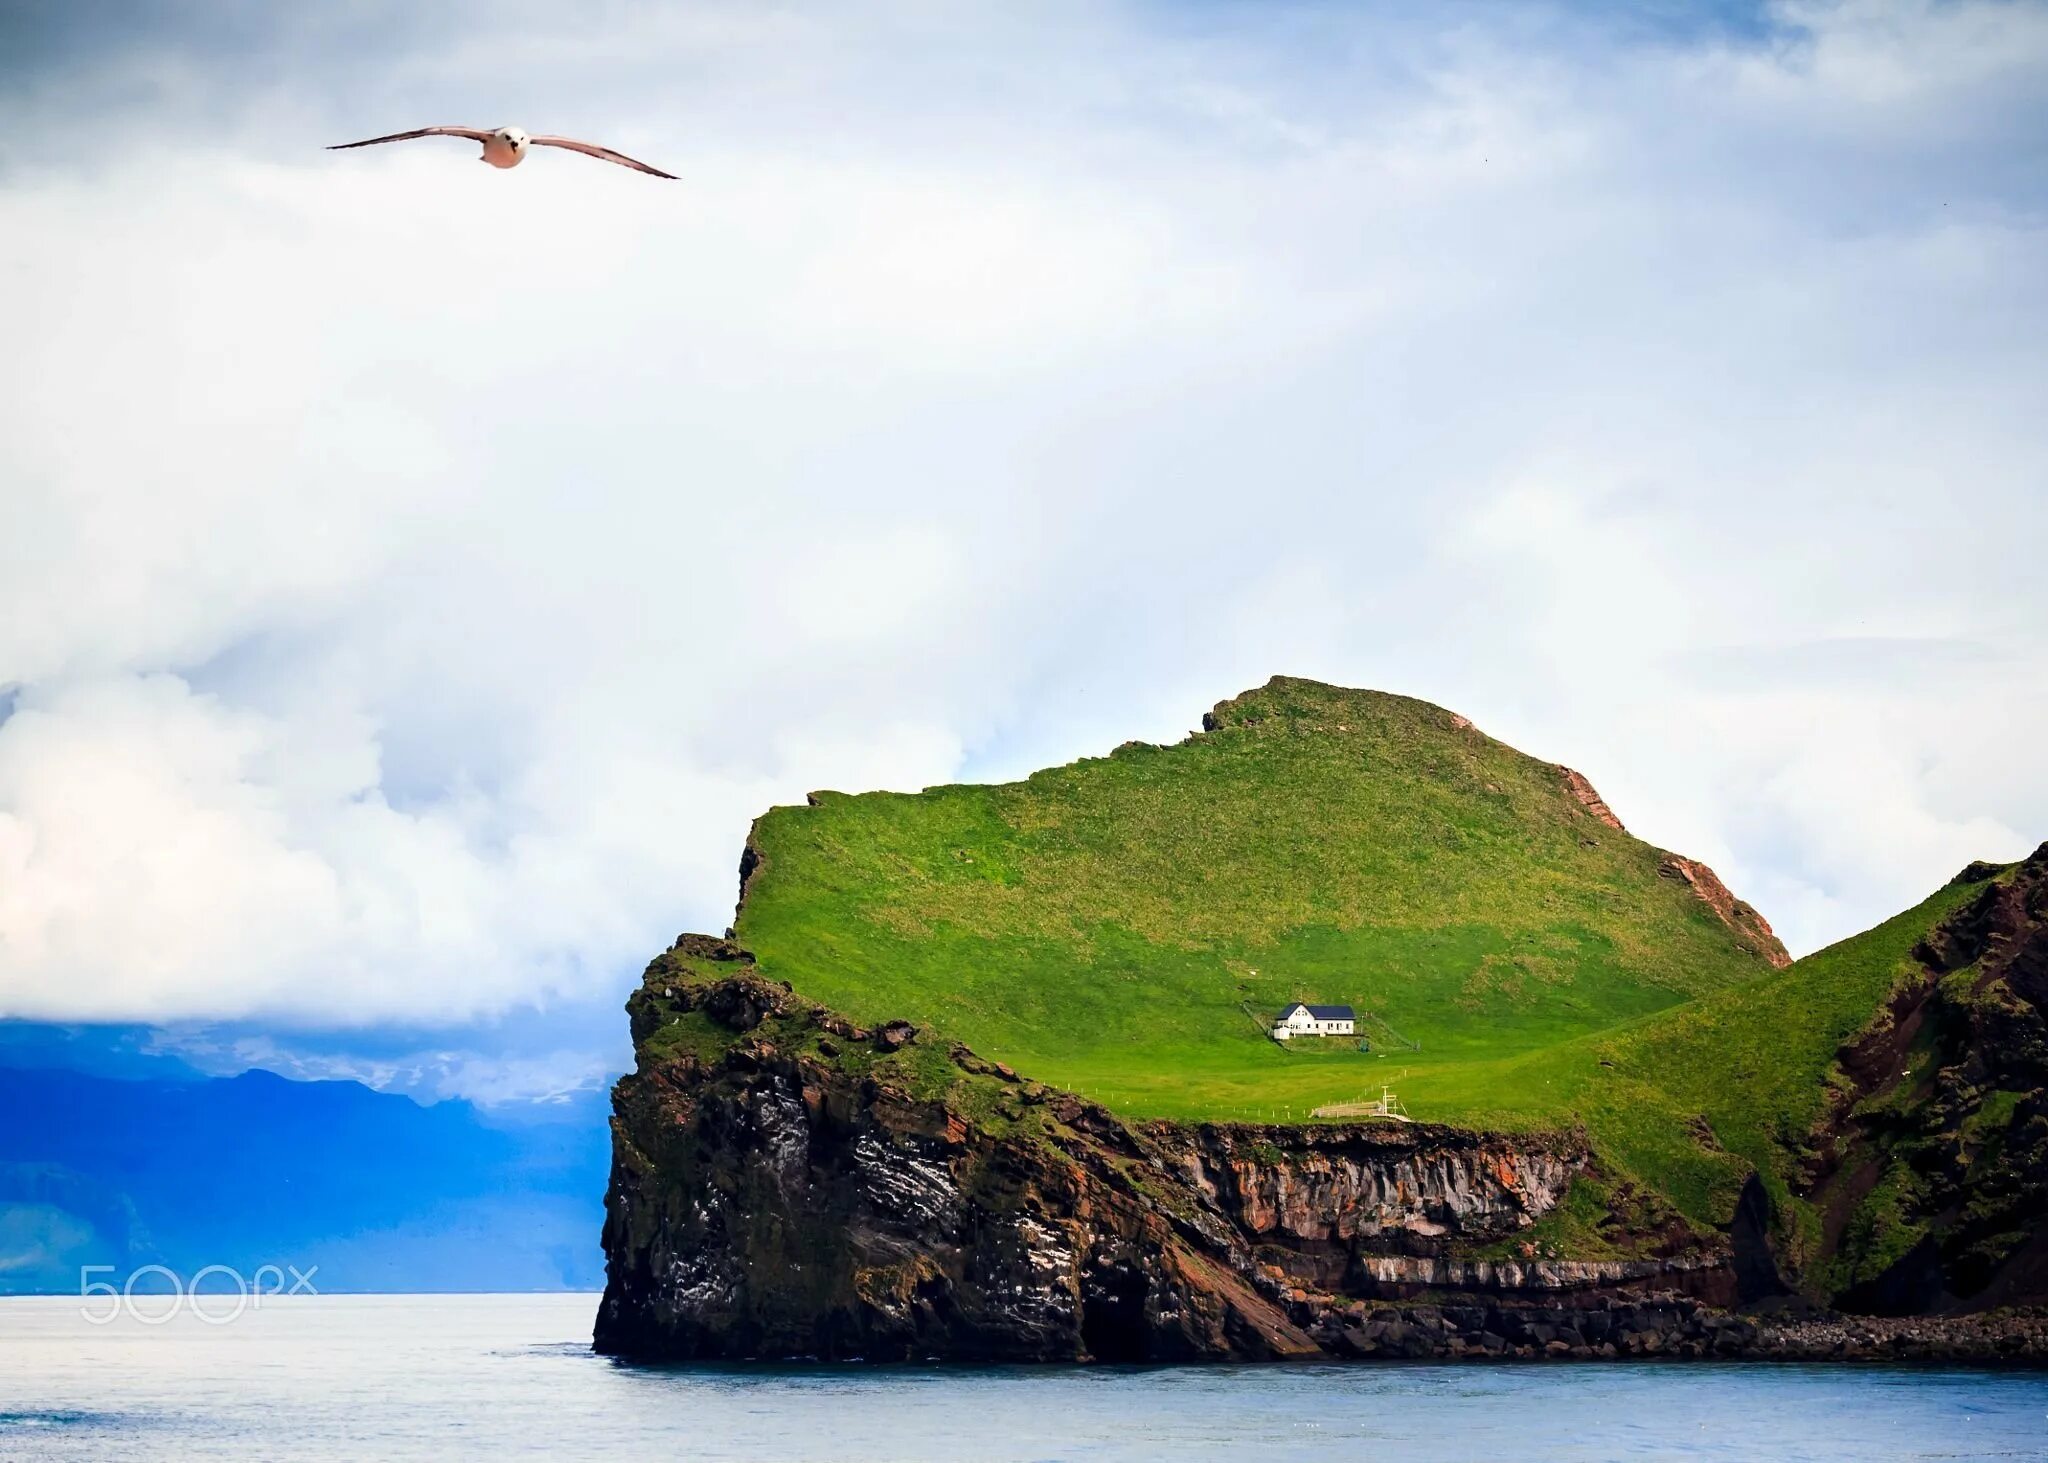 1 остров любой. Остров Эллидаэй Исландия. Остров Эдлидаэй в Исландии. Самый одинокий дом в мире- остров Эллидаэй, Исландия 🇮🇸. Дом на острове Эллидаэй Исландия.